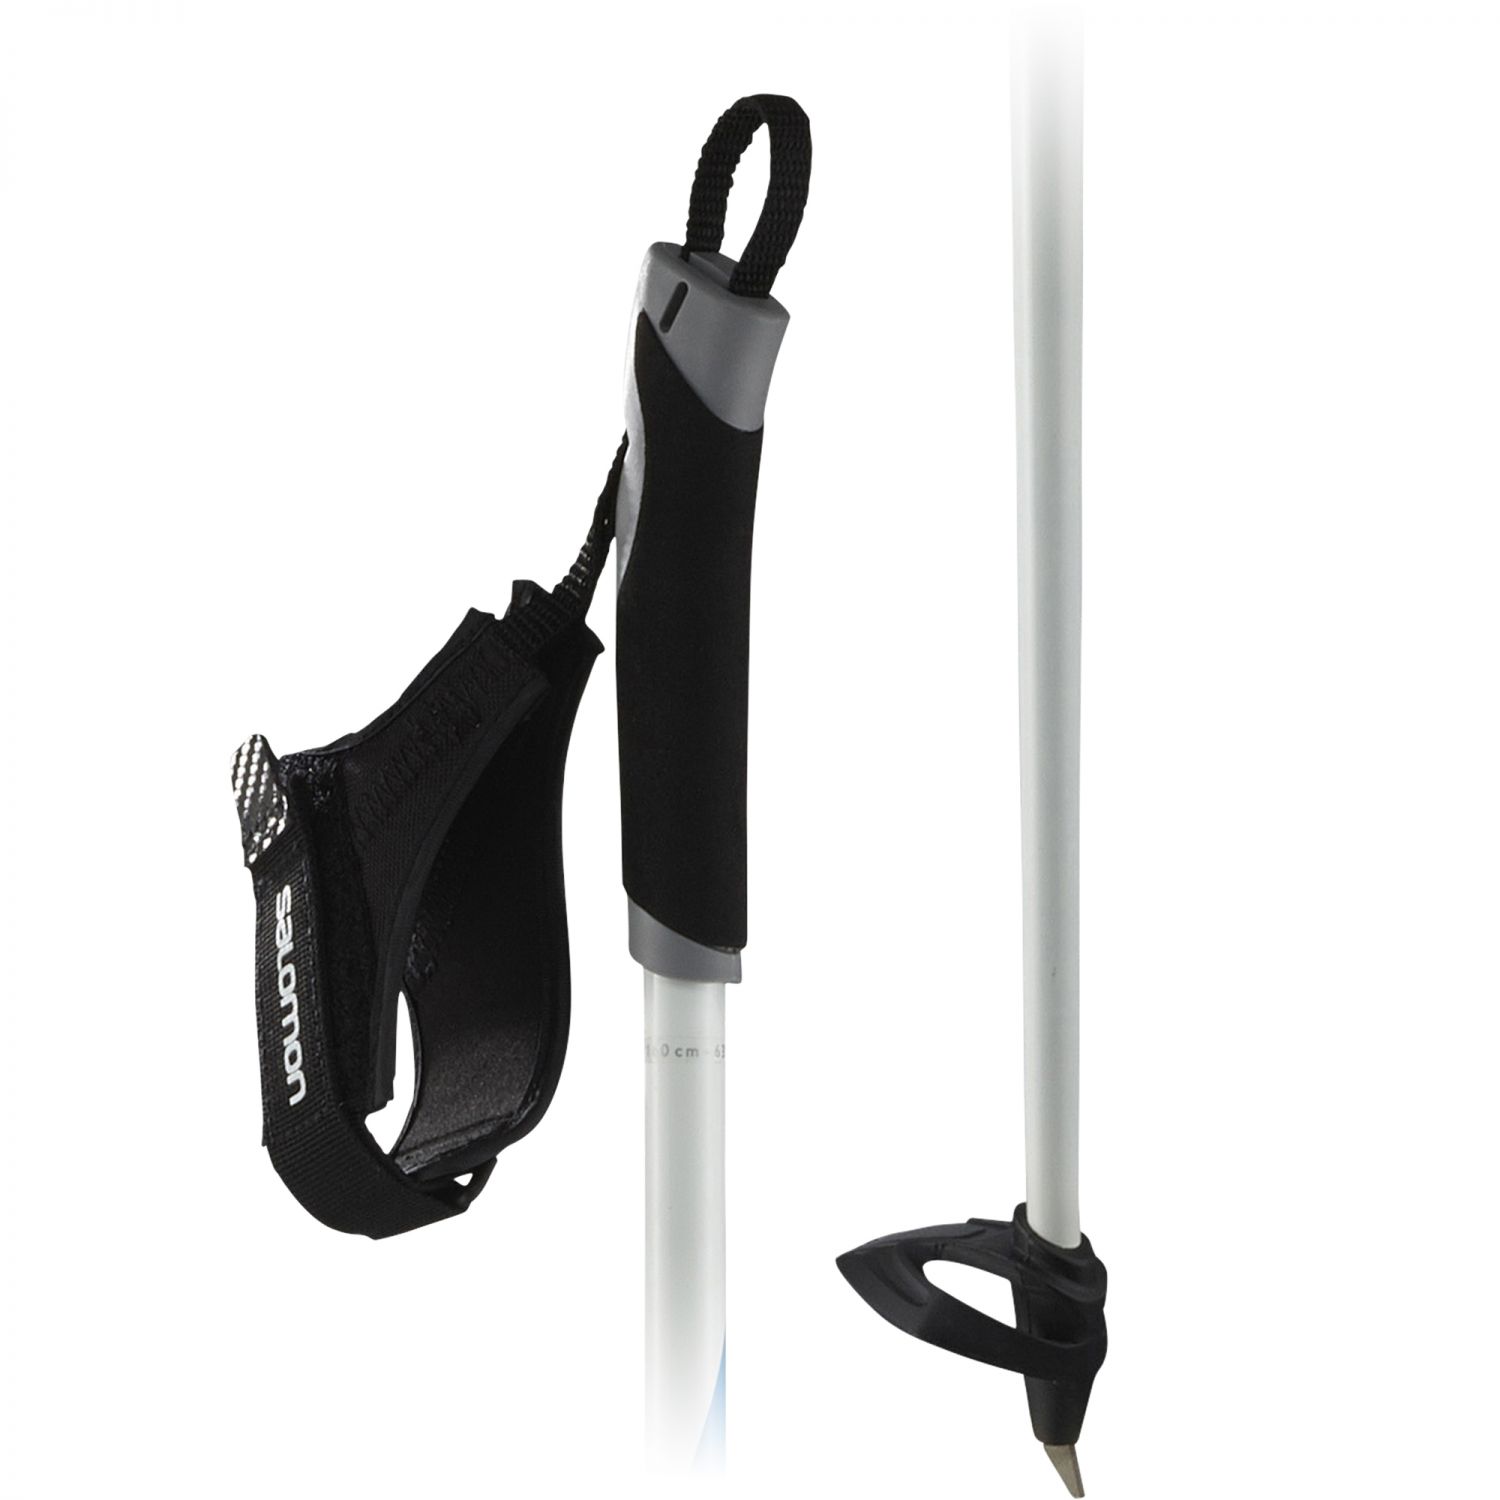 Salomon R 20, ski poles, black